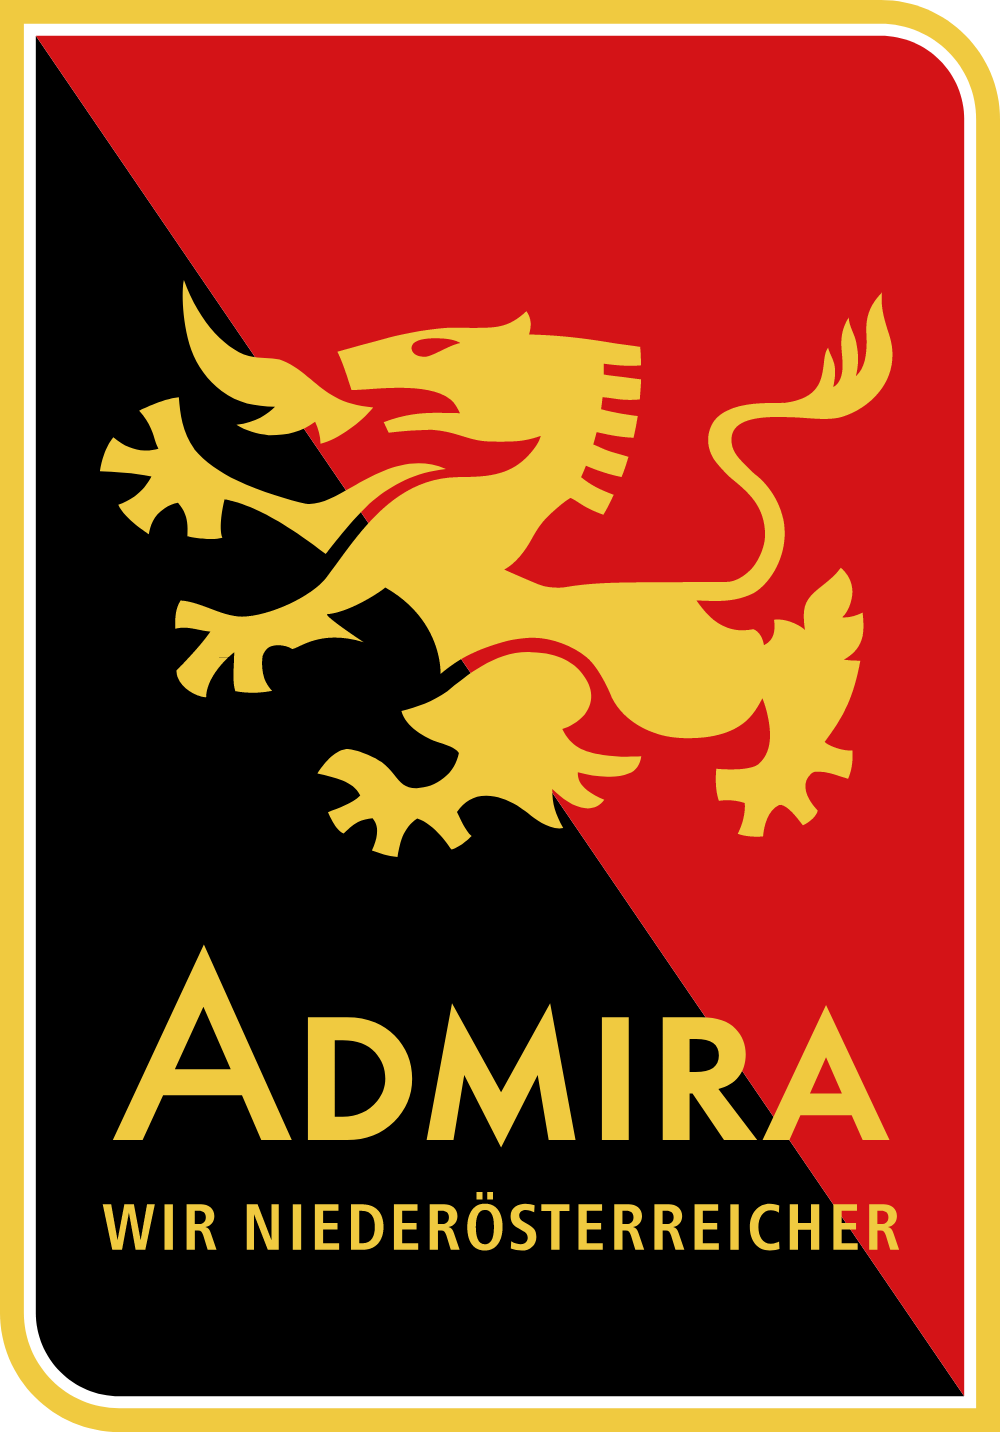 Herold Admira Wir Niederosterreicher Logo Logos